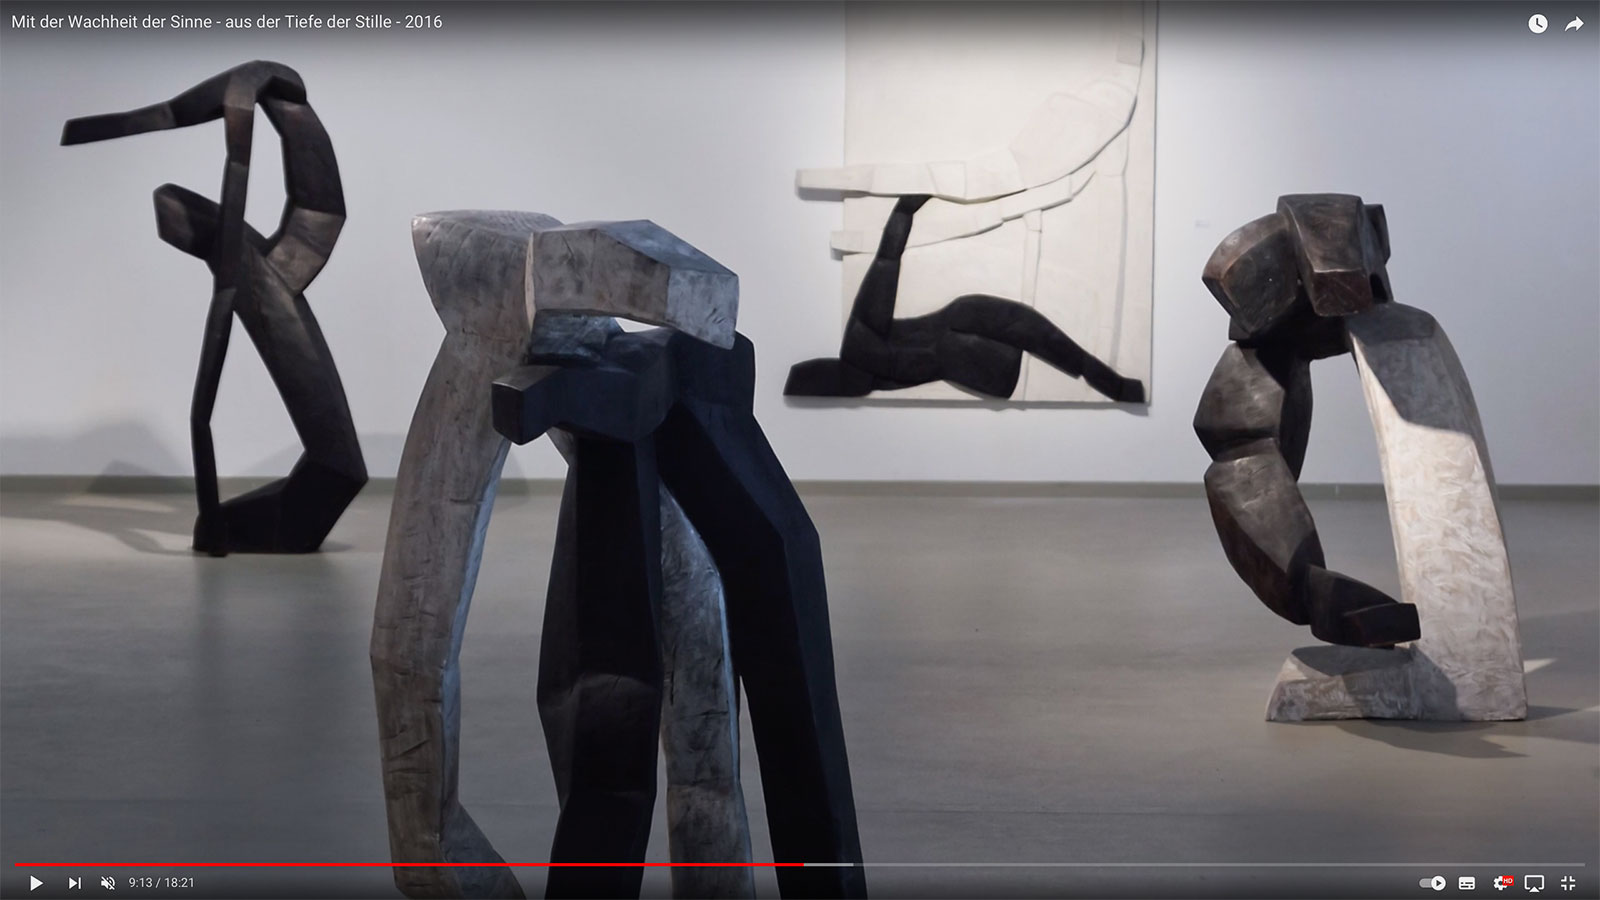 YouTube-Video: Mit der Wachheit der Sinne - aus der Tiefe der Stille (Ausstellung Kunststation Kleinsassen, 2016)